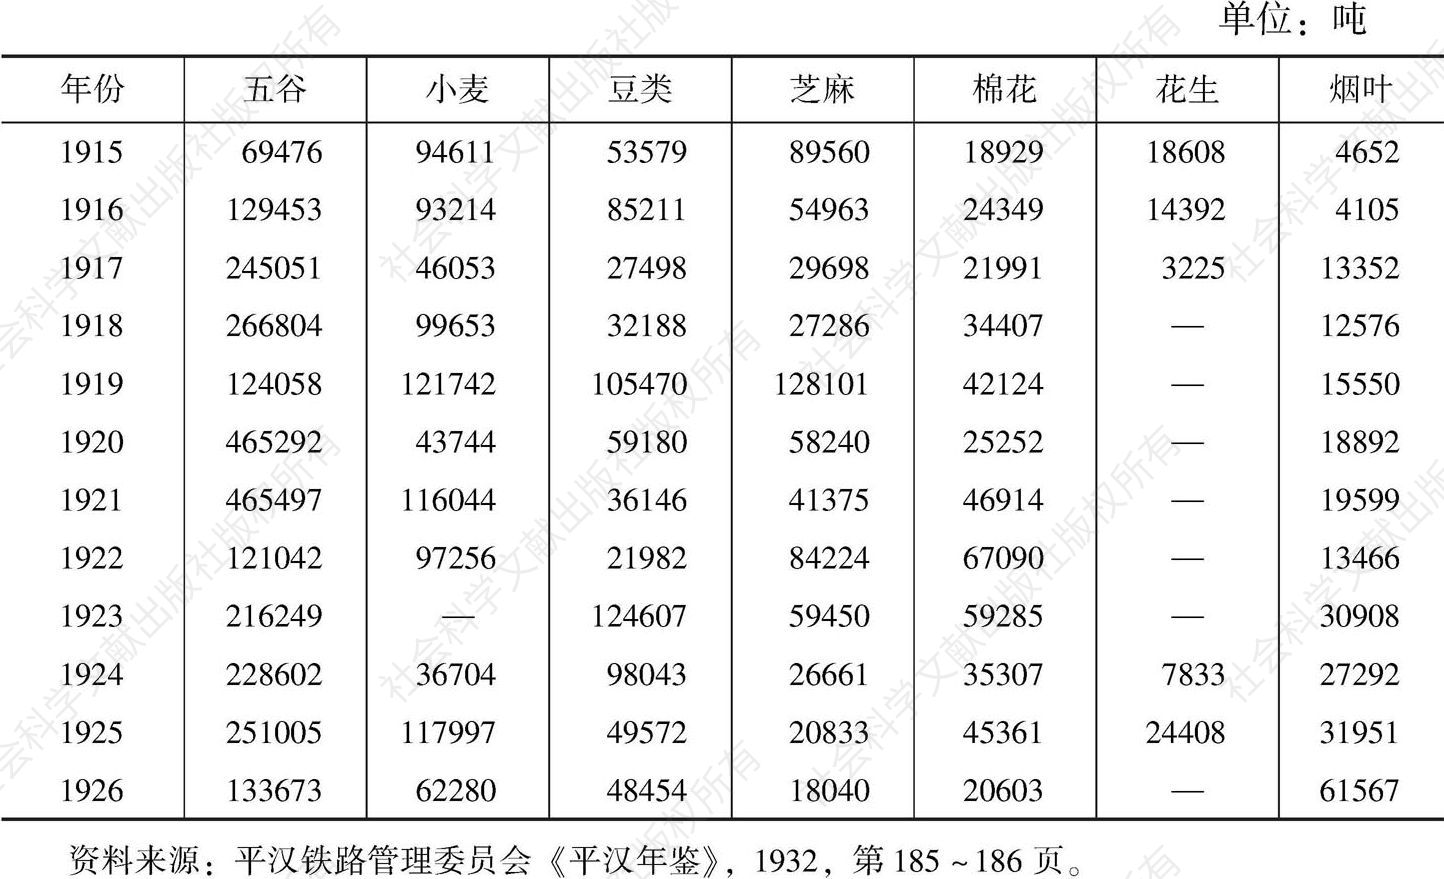 表1-7 京汉铁路农产品运输数量统计